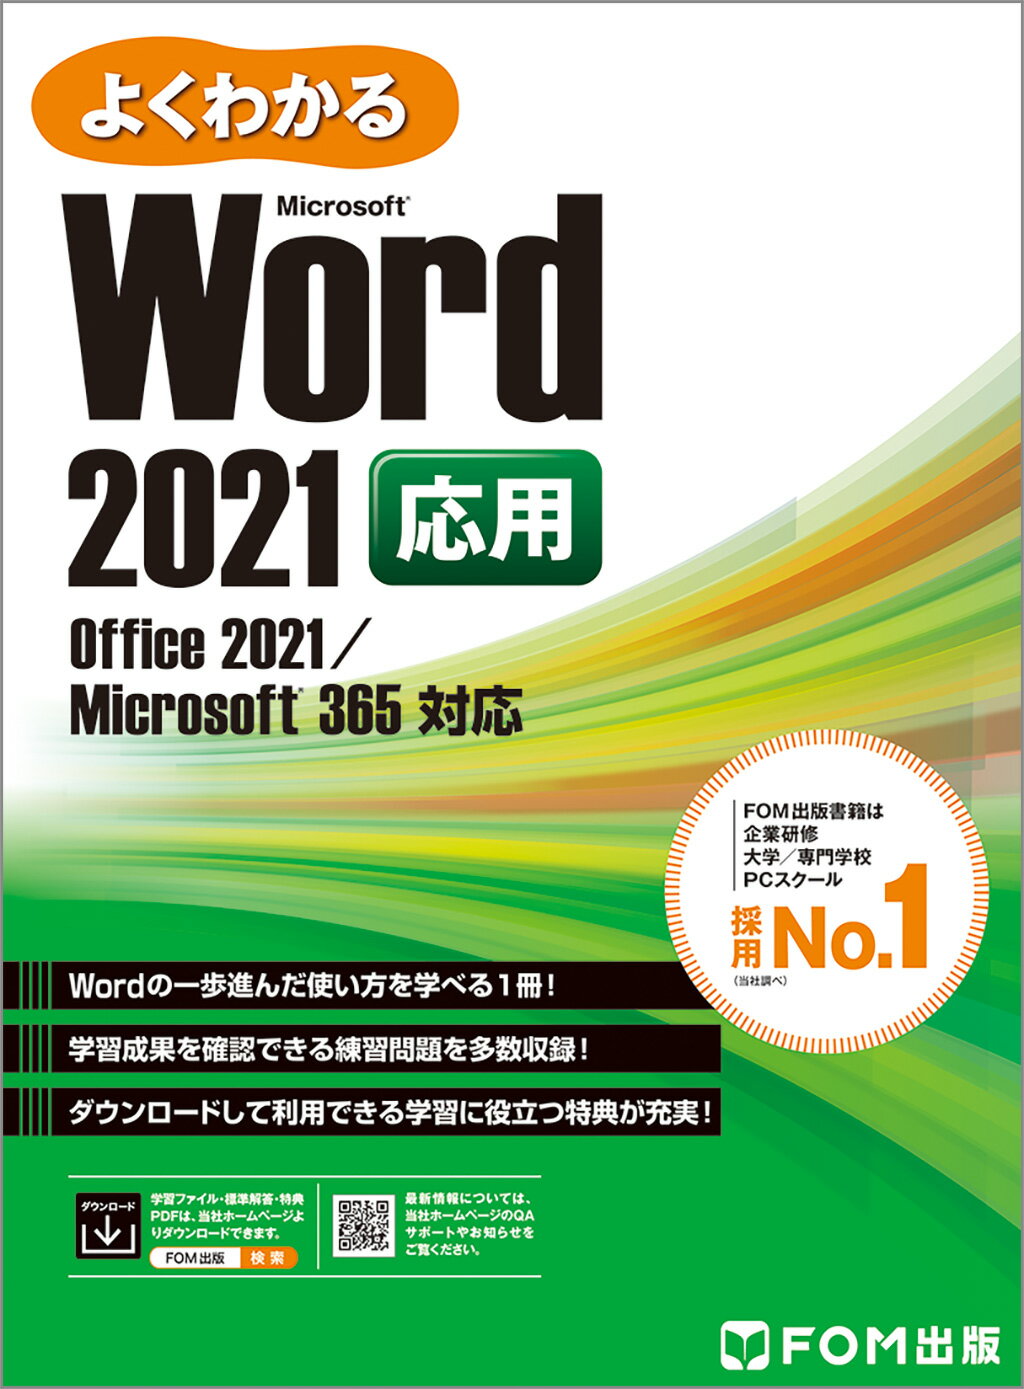 人気沸騰】 よくわかるMicrosoft Word 2013 excel 基礎 2冊